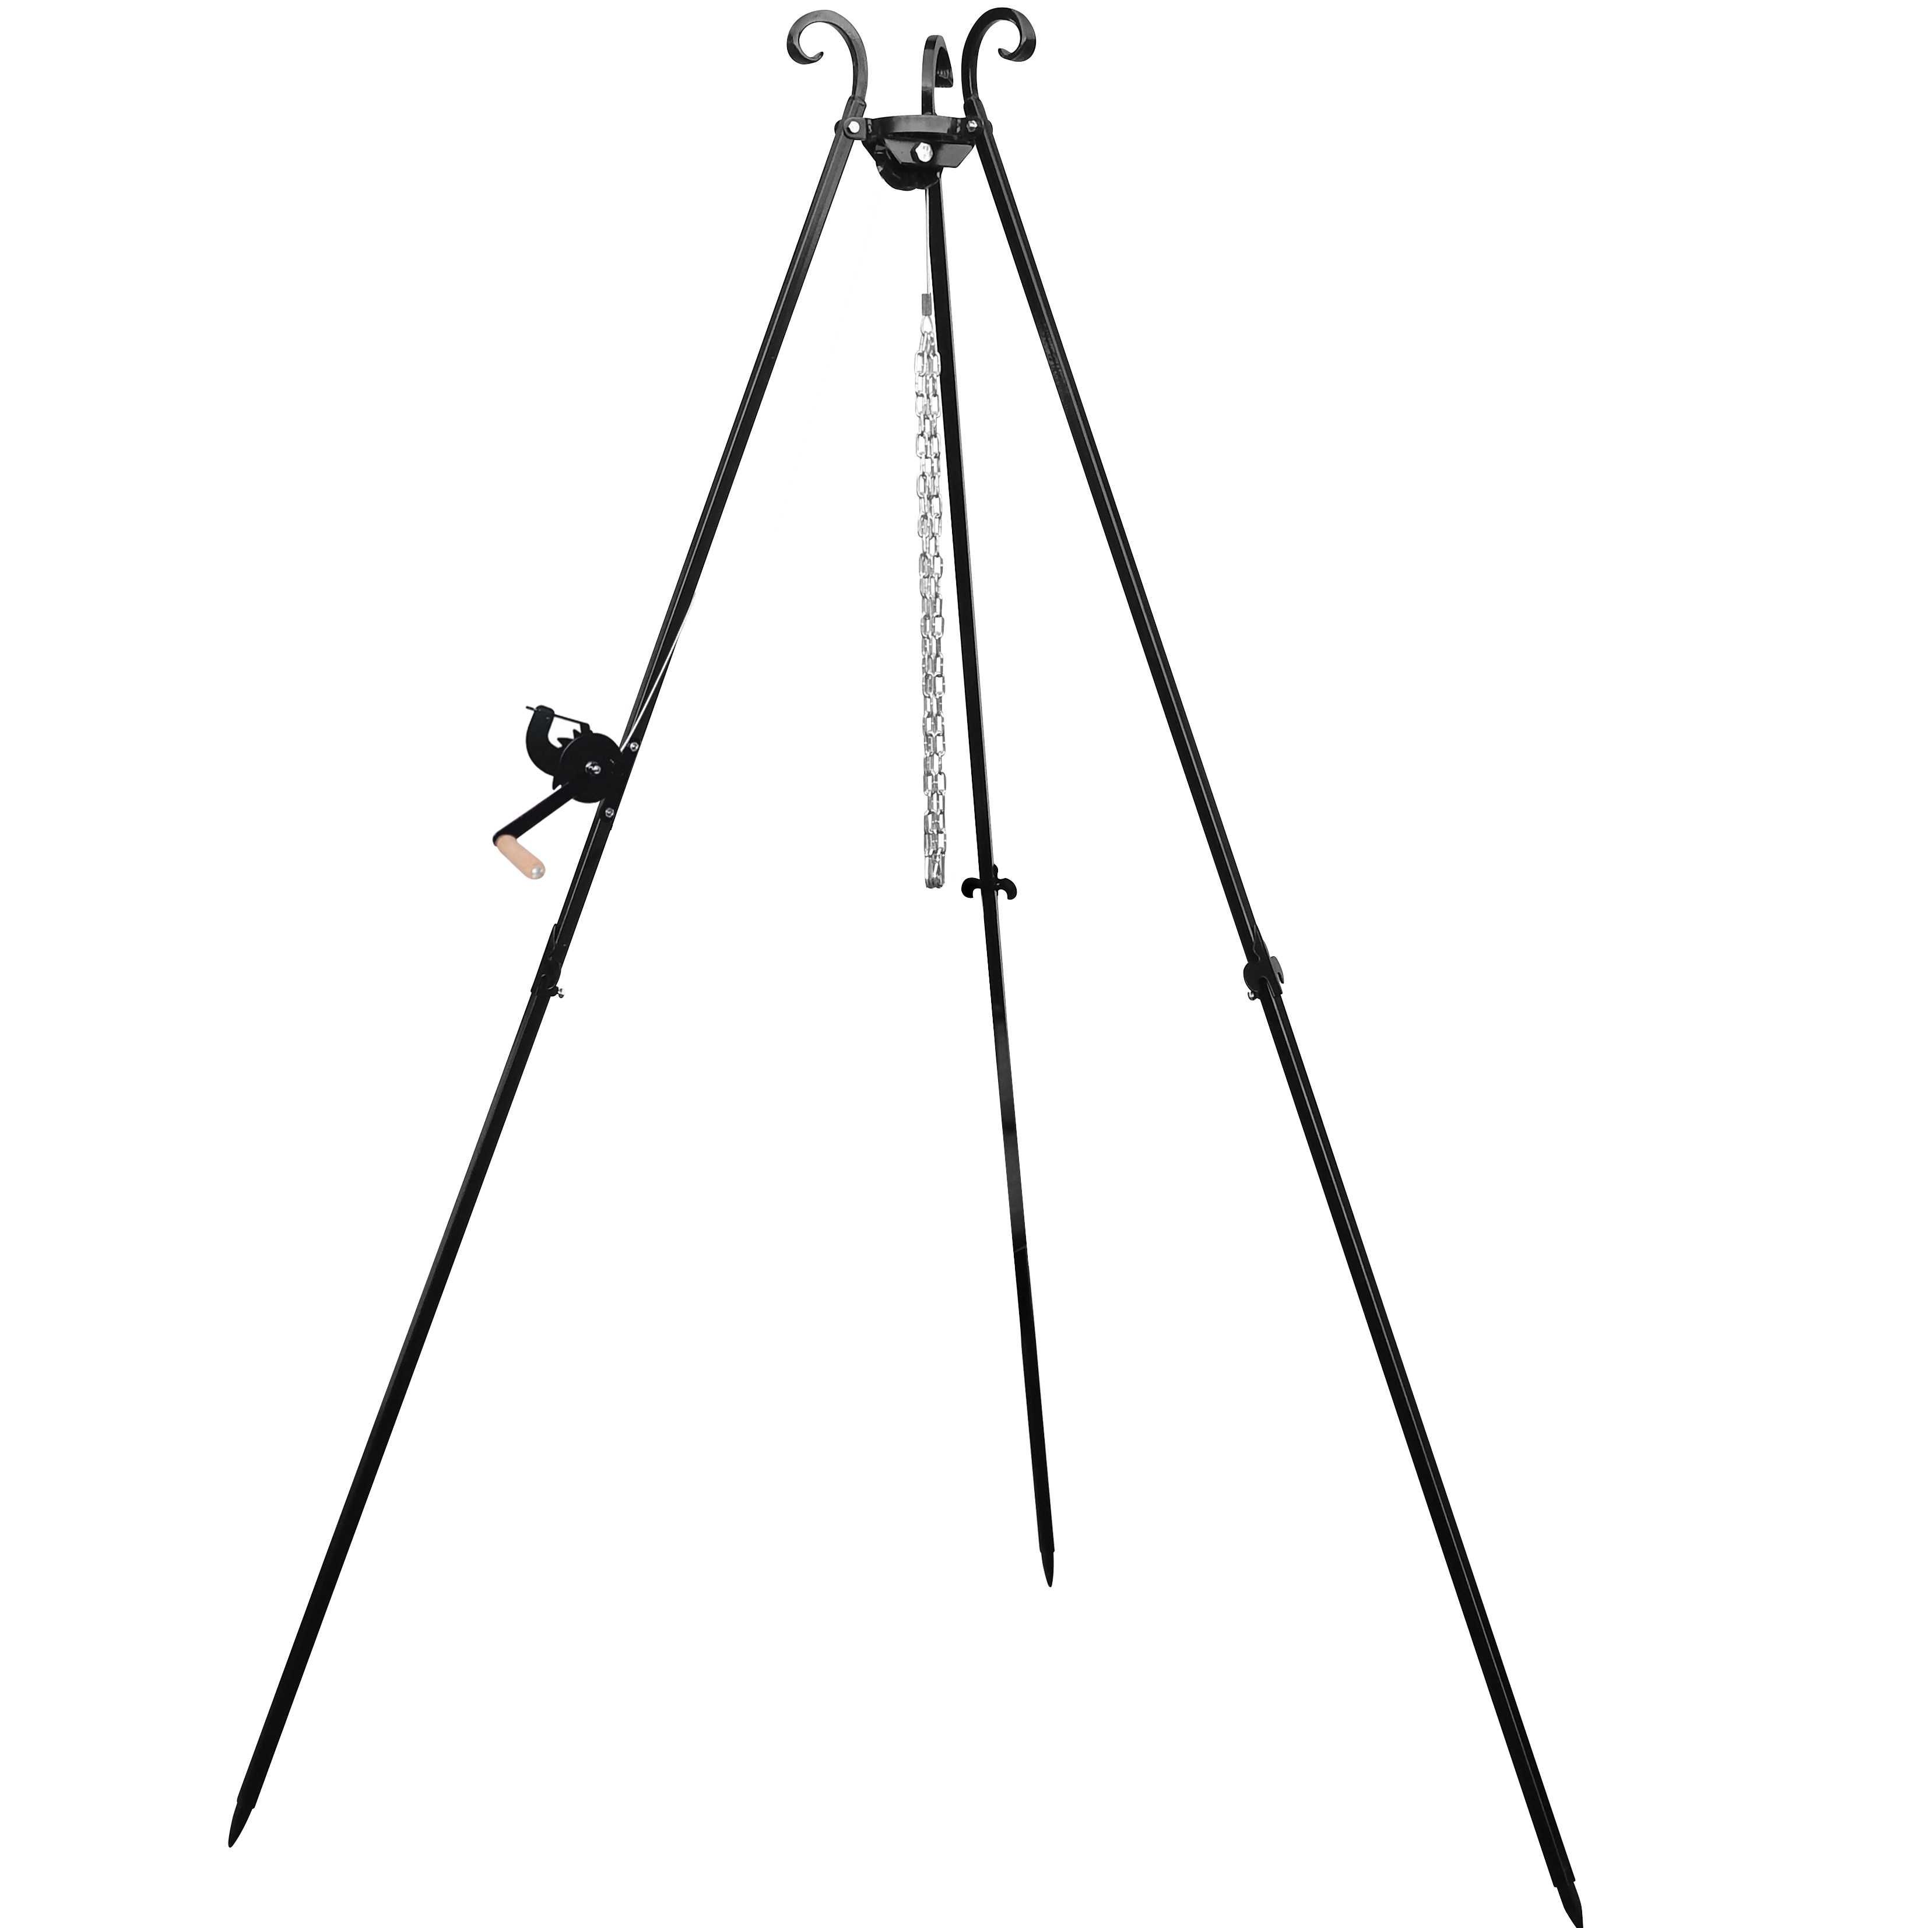 Grill trójnóg 185 cm ogrodowy ogniskowy kołowrotek korbka